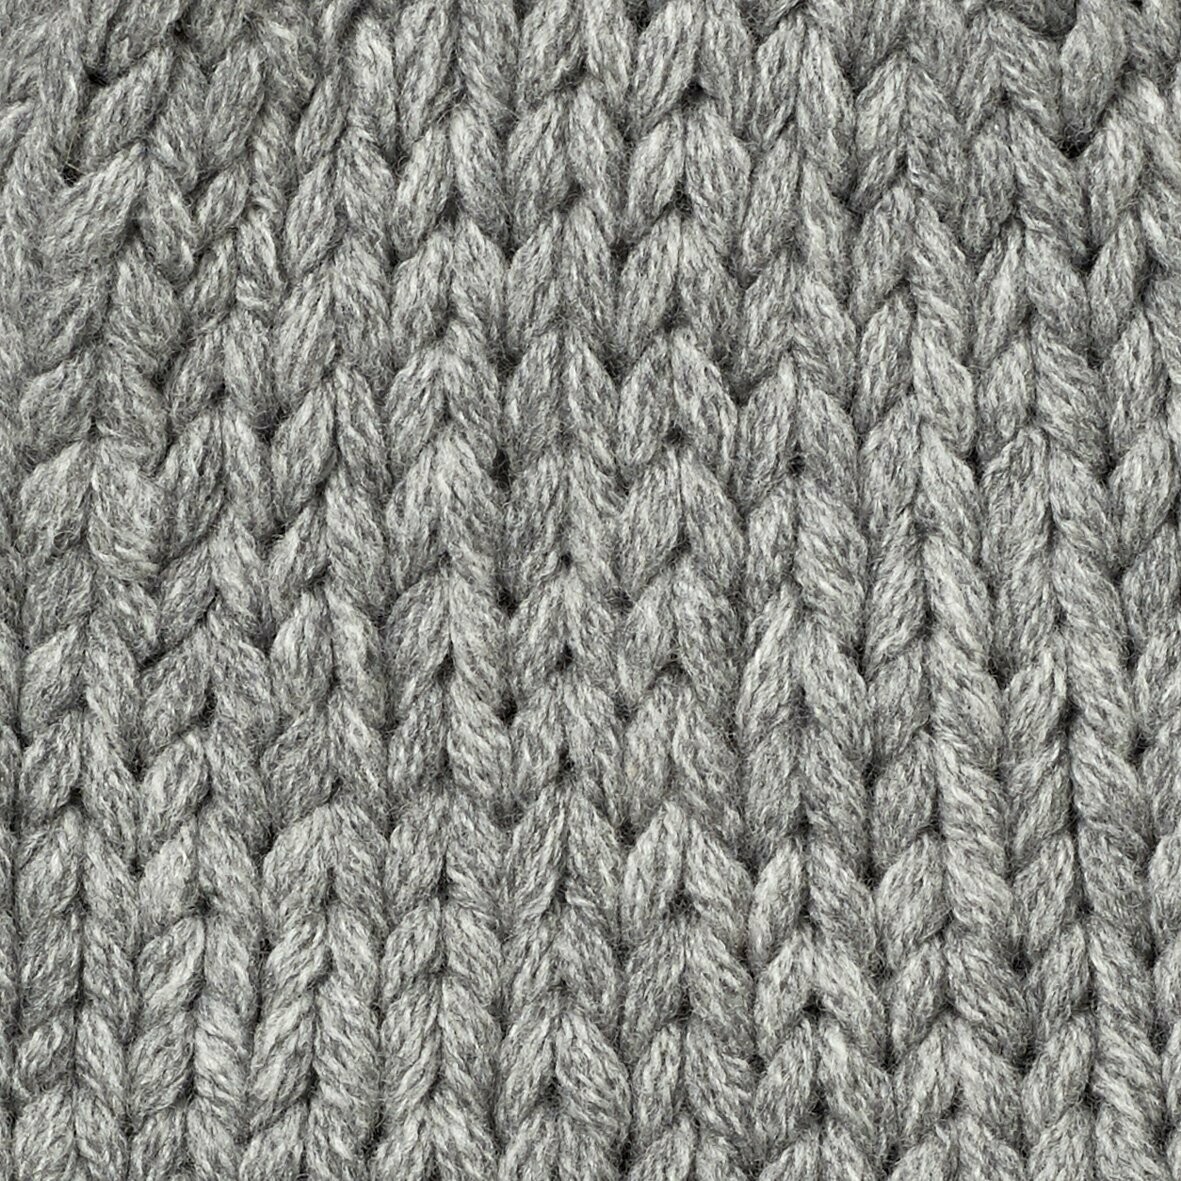 Handstrick-Slipover POLLY, Farbe: grau, Größe: XS/S